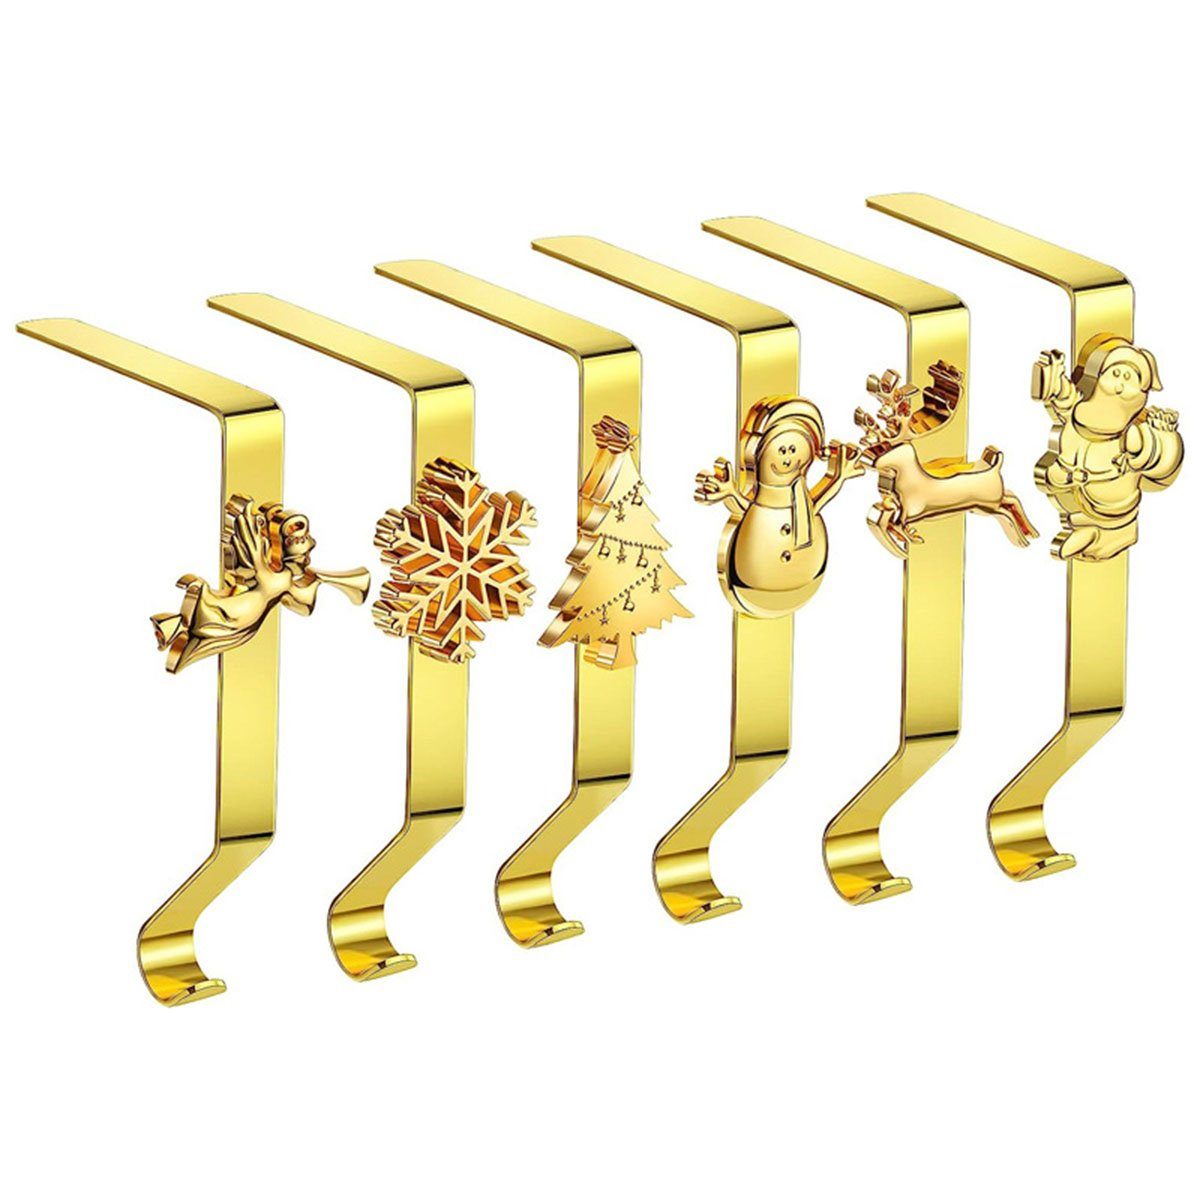 6Pcs Weihnachtsszene Kamin CTGtree Weihnachtsstrumpf Metall Gold - Halter Haken Haken